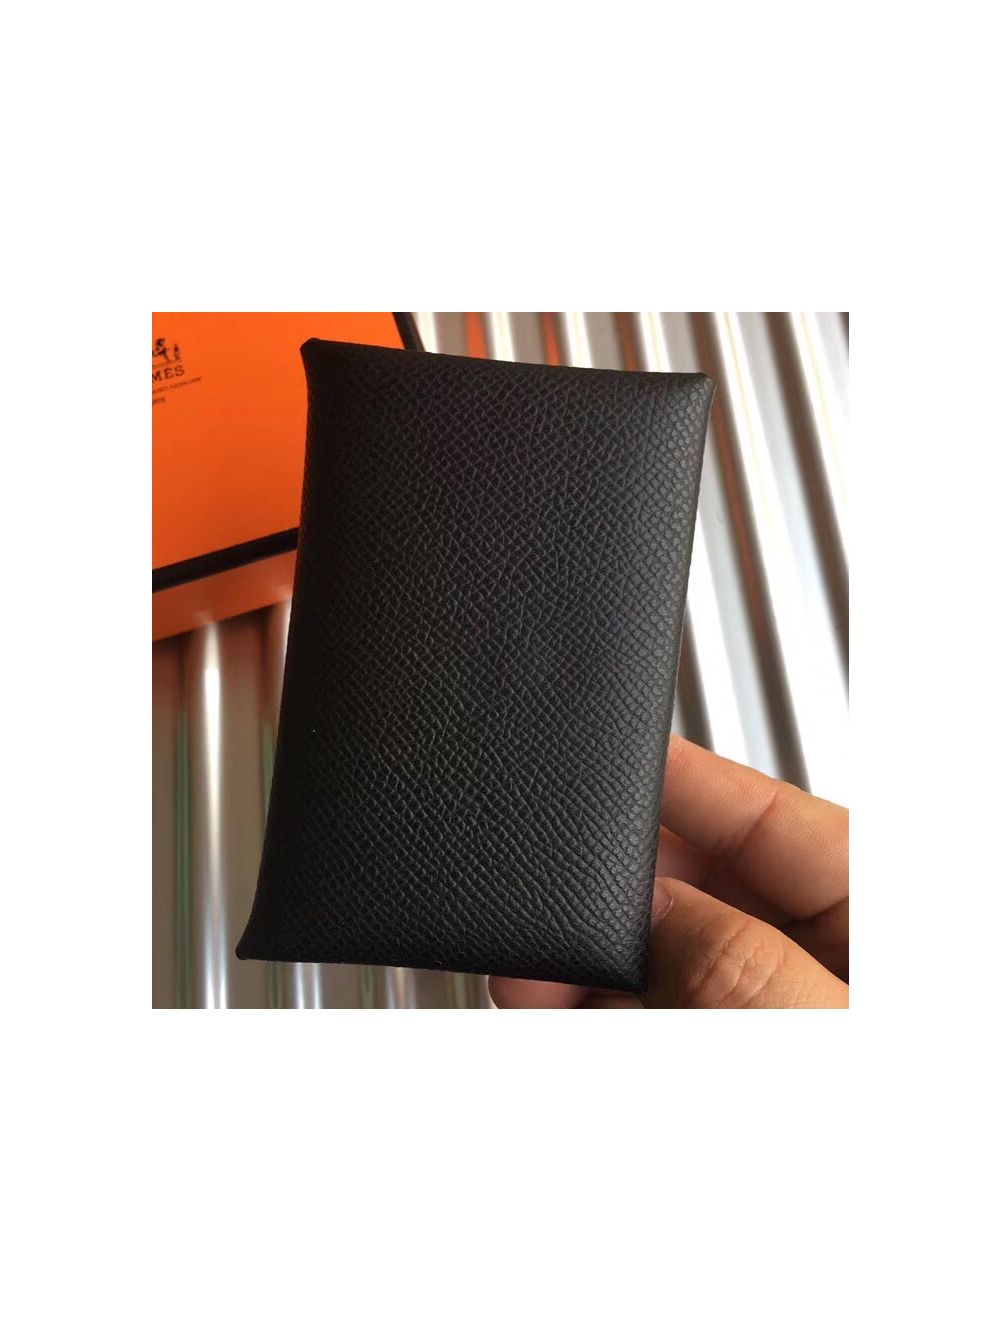 NEW Hermes Calvi Card Holder Leather Case Epsom Black Noir Classic